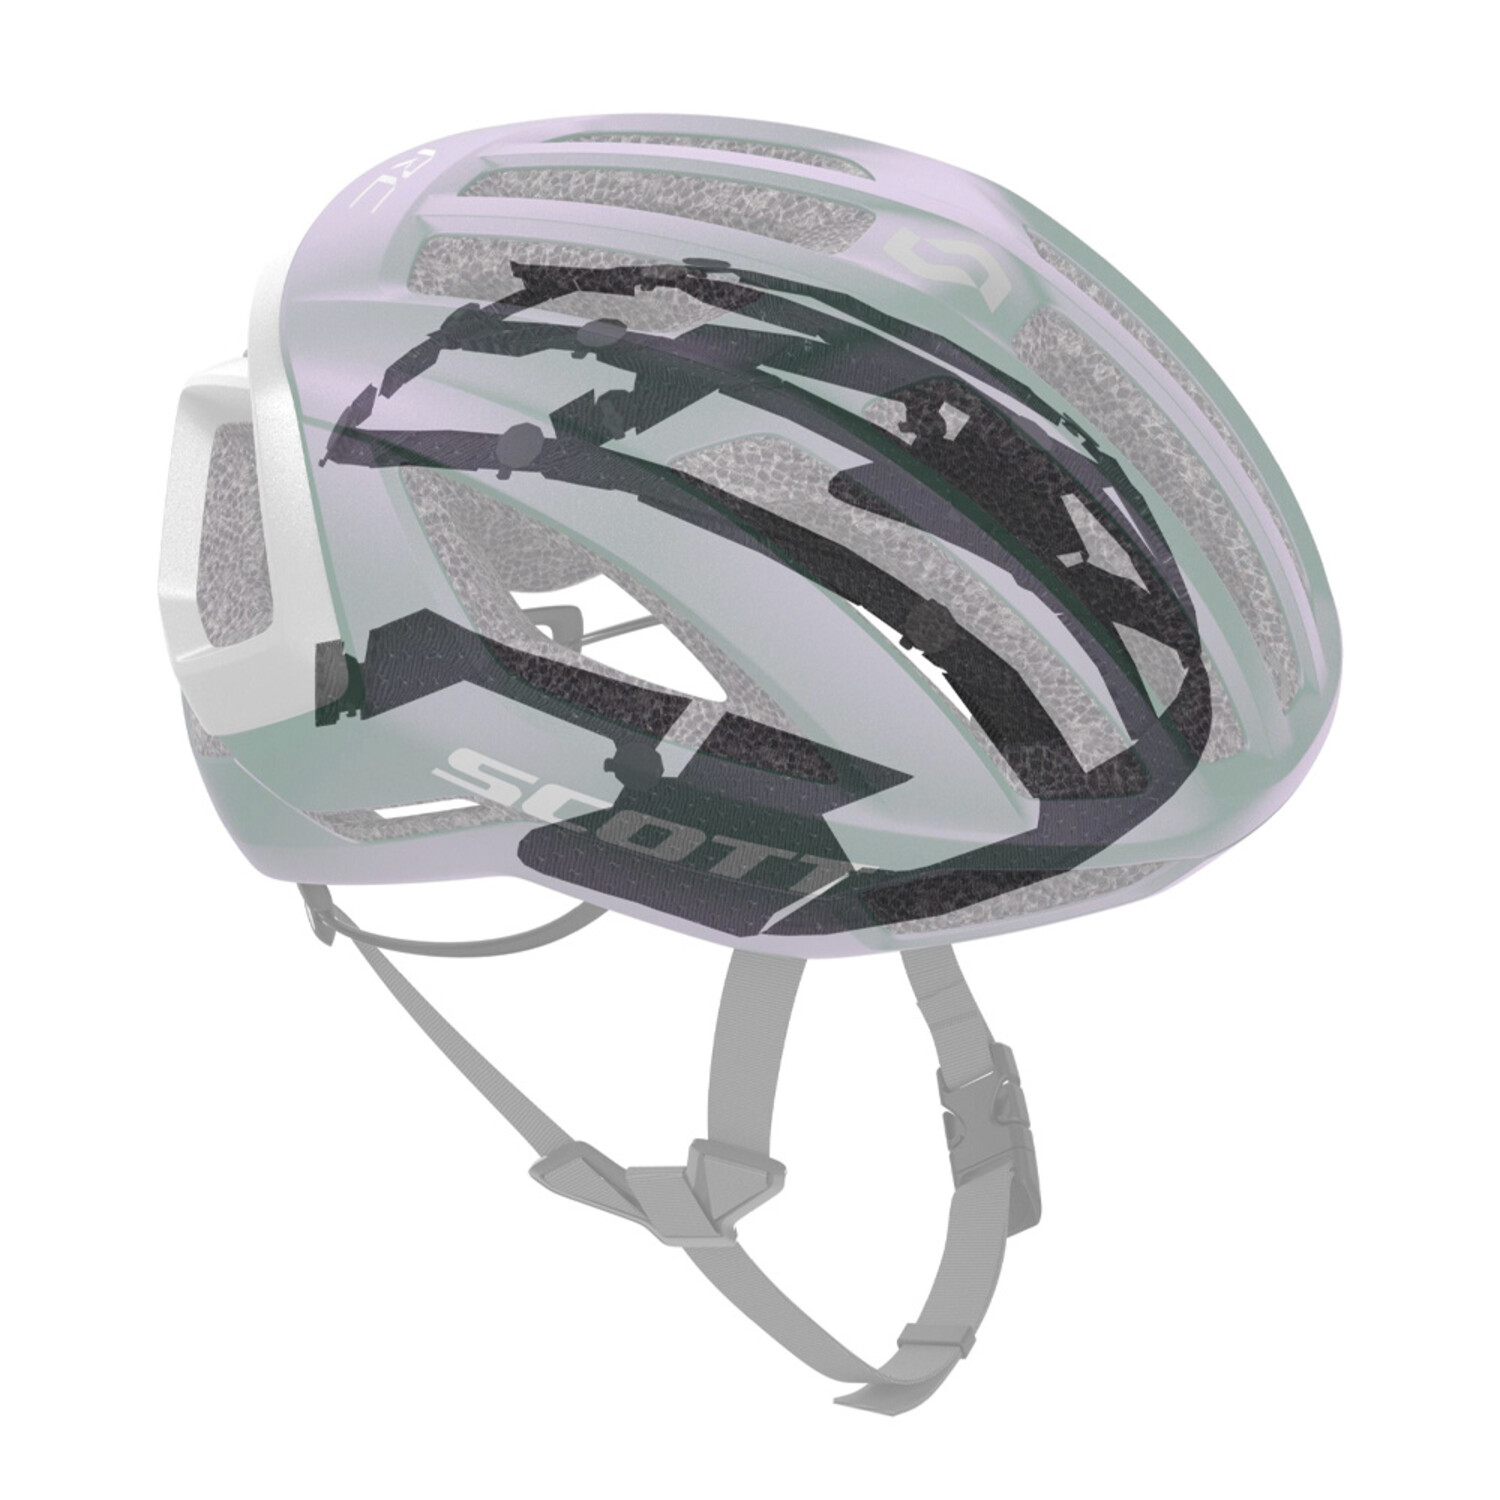 Scott Scott Centric Plus Helmet